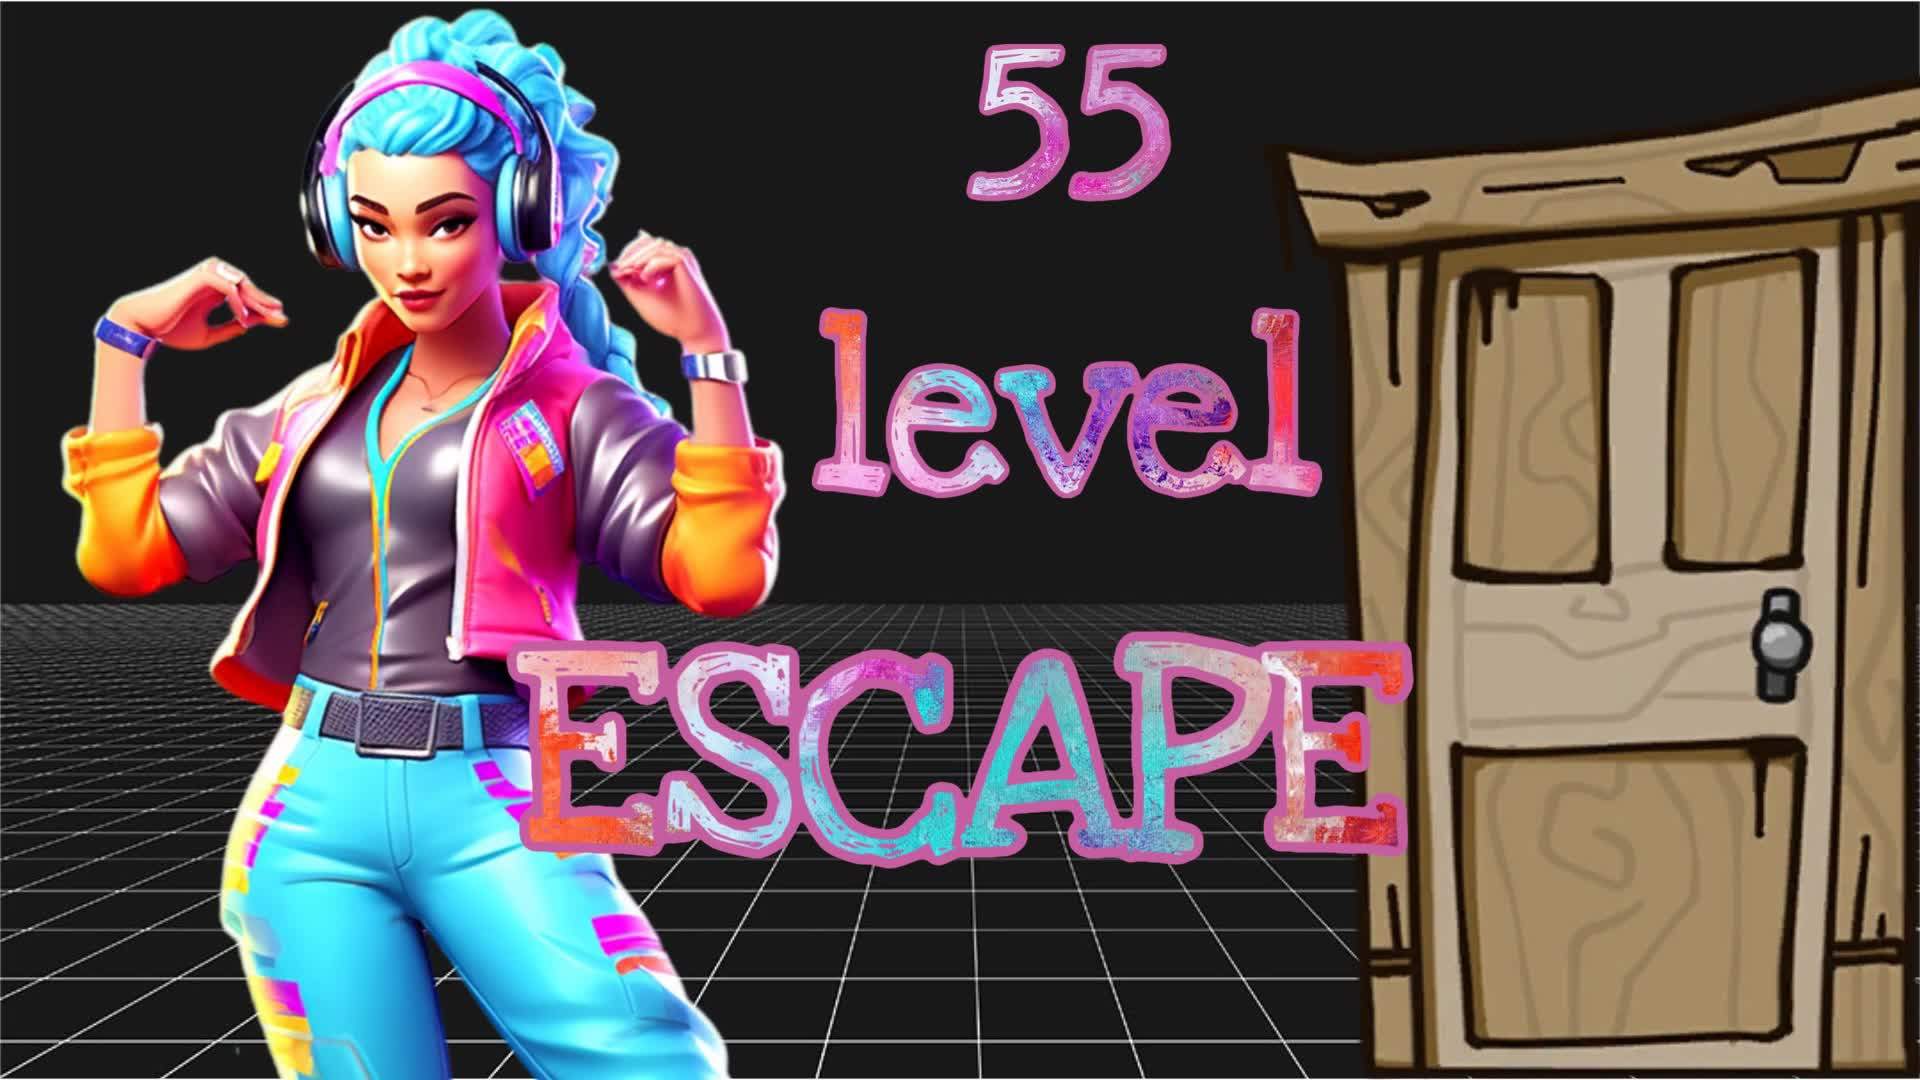 🧩 55Level EscapeGame 🧩